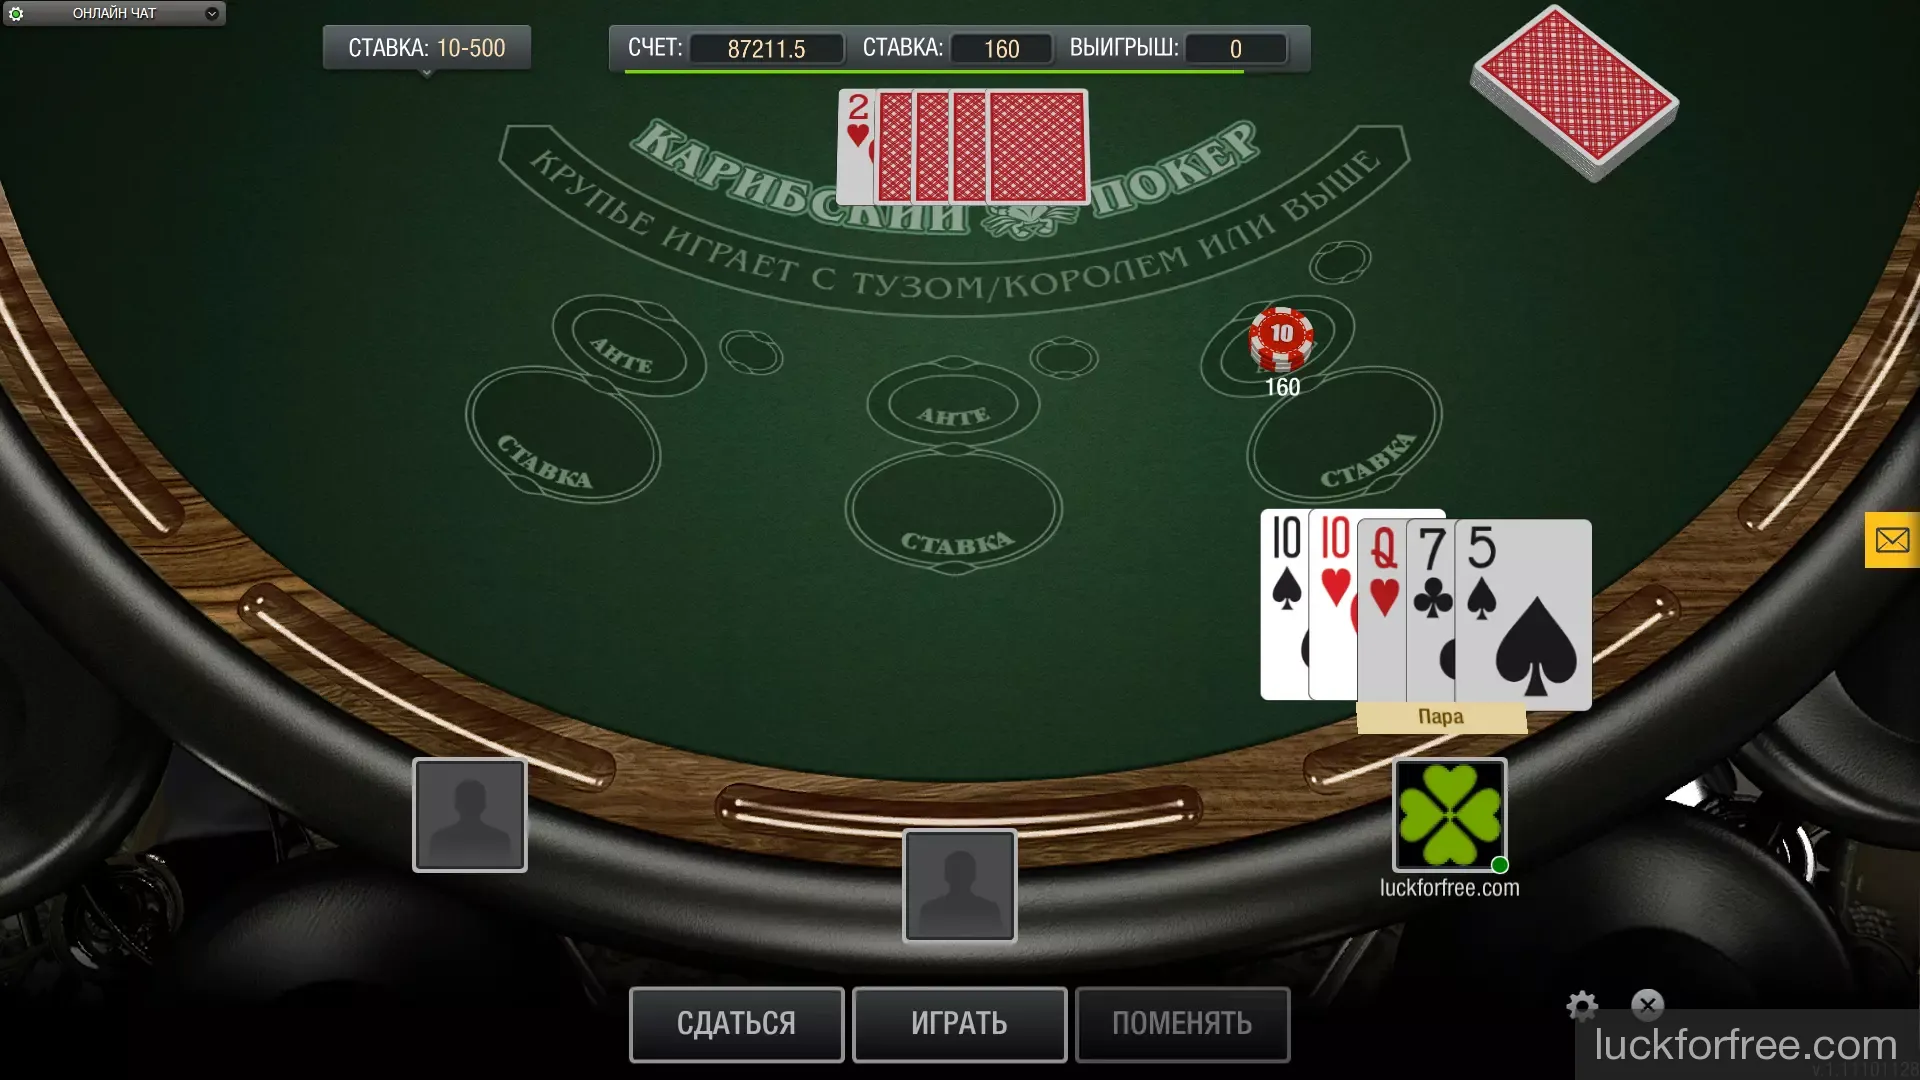 Играть в бесплатные игры покер без регистрации казино рояль 2006 смотреть онлайн 720 hd